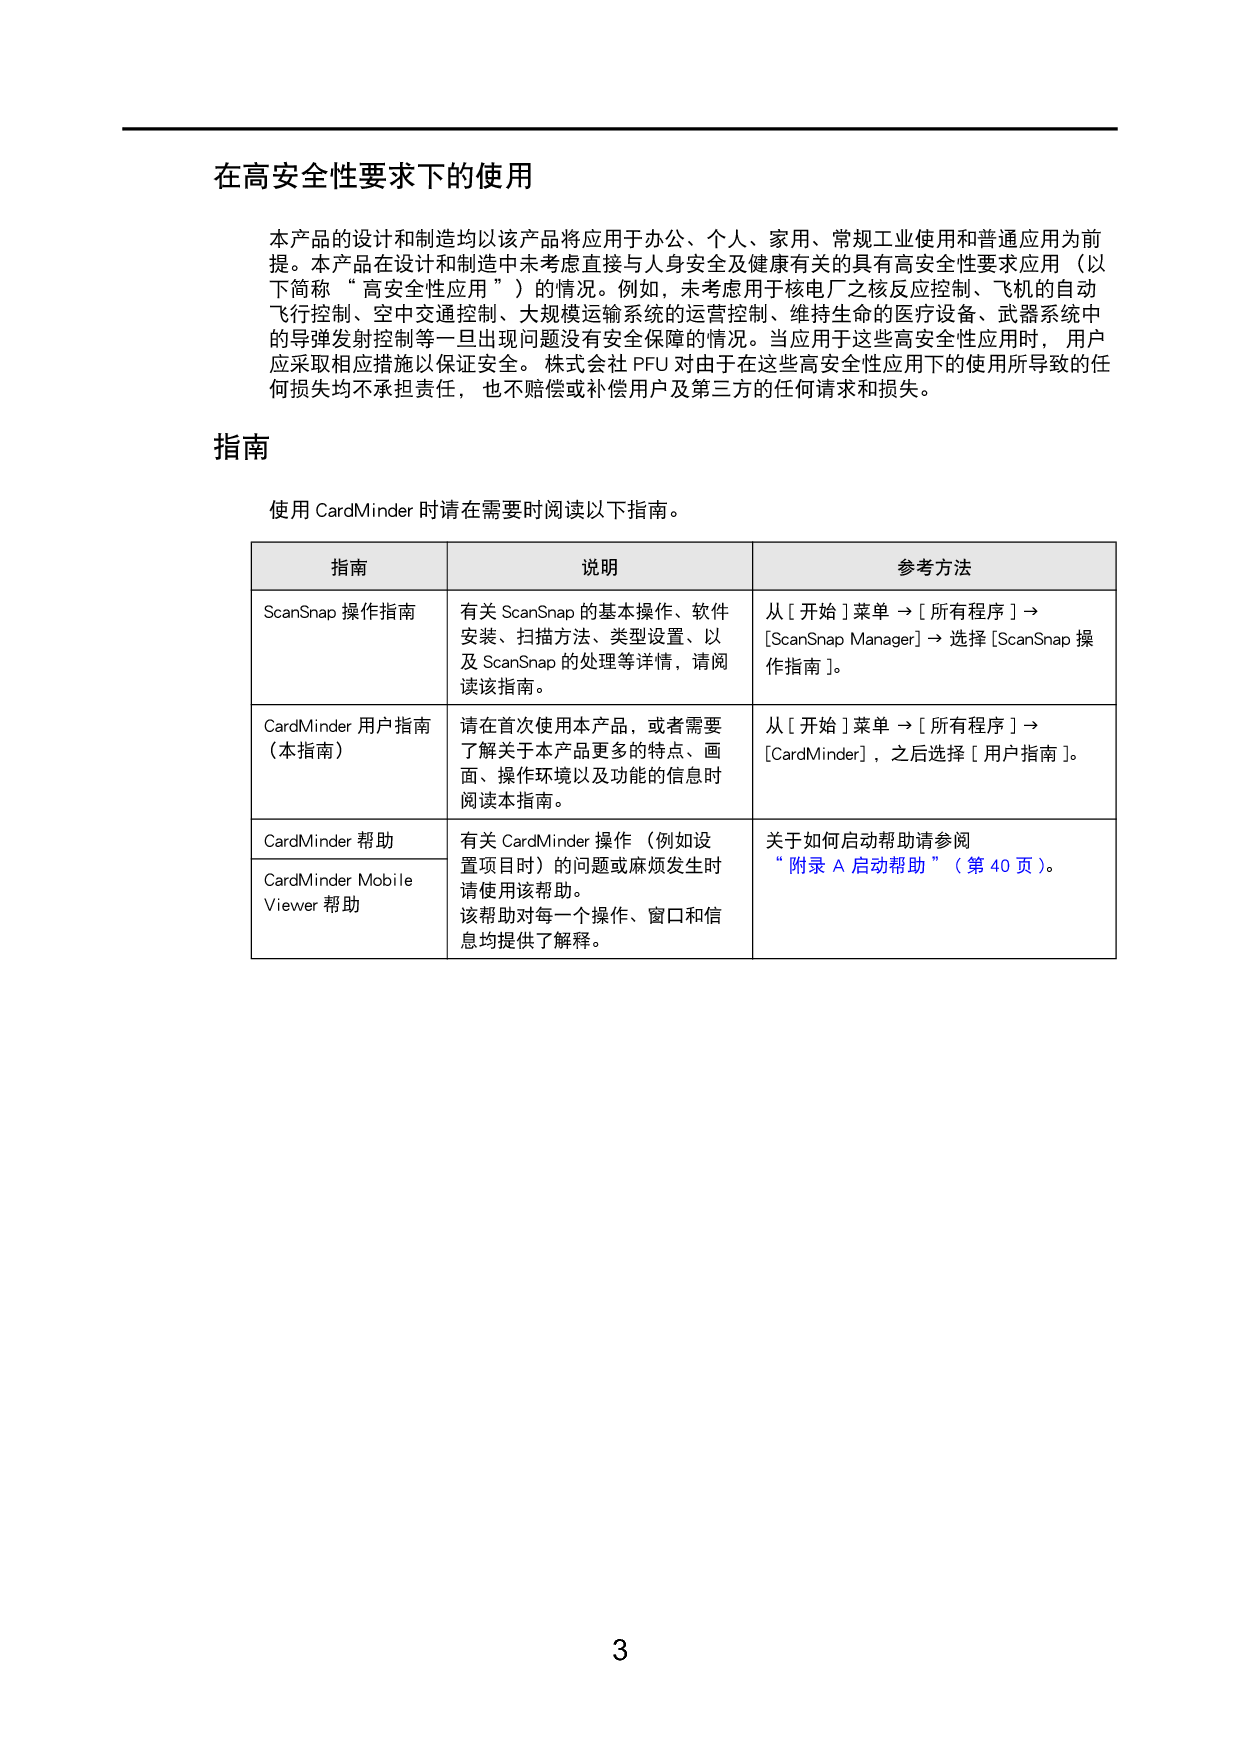 富士通 Fujitsu CardMinder 2011 用户指南 第2页